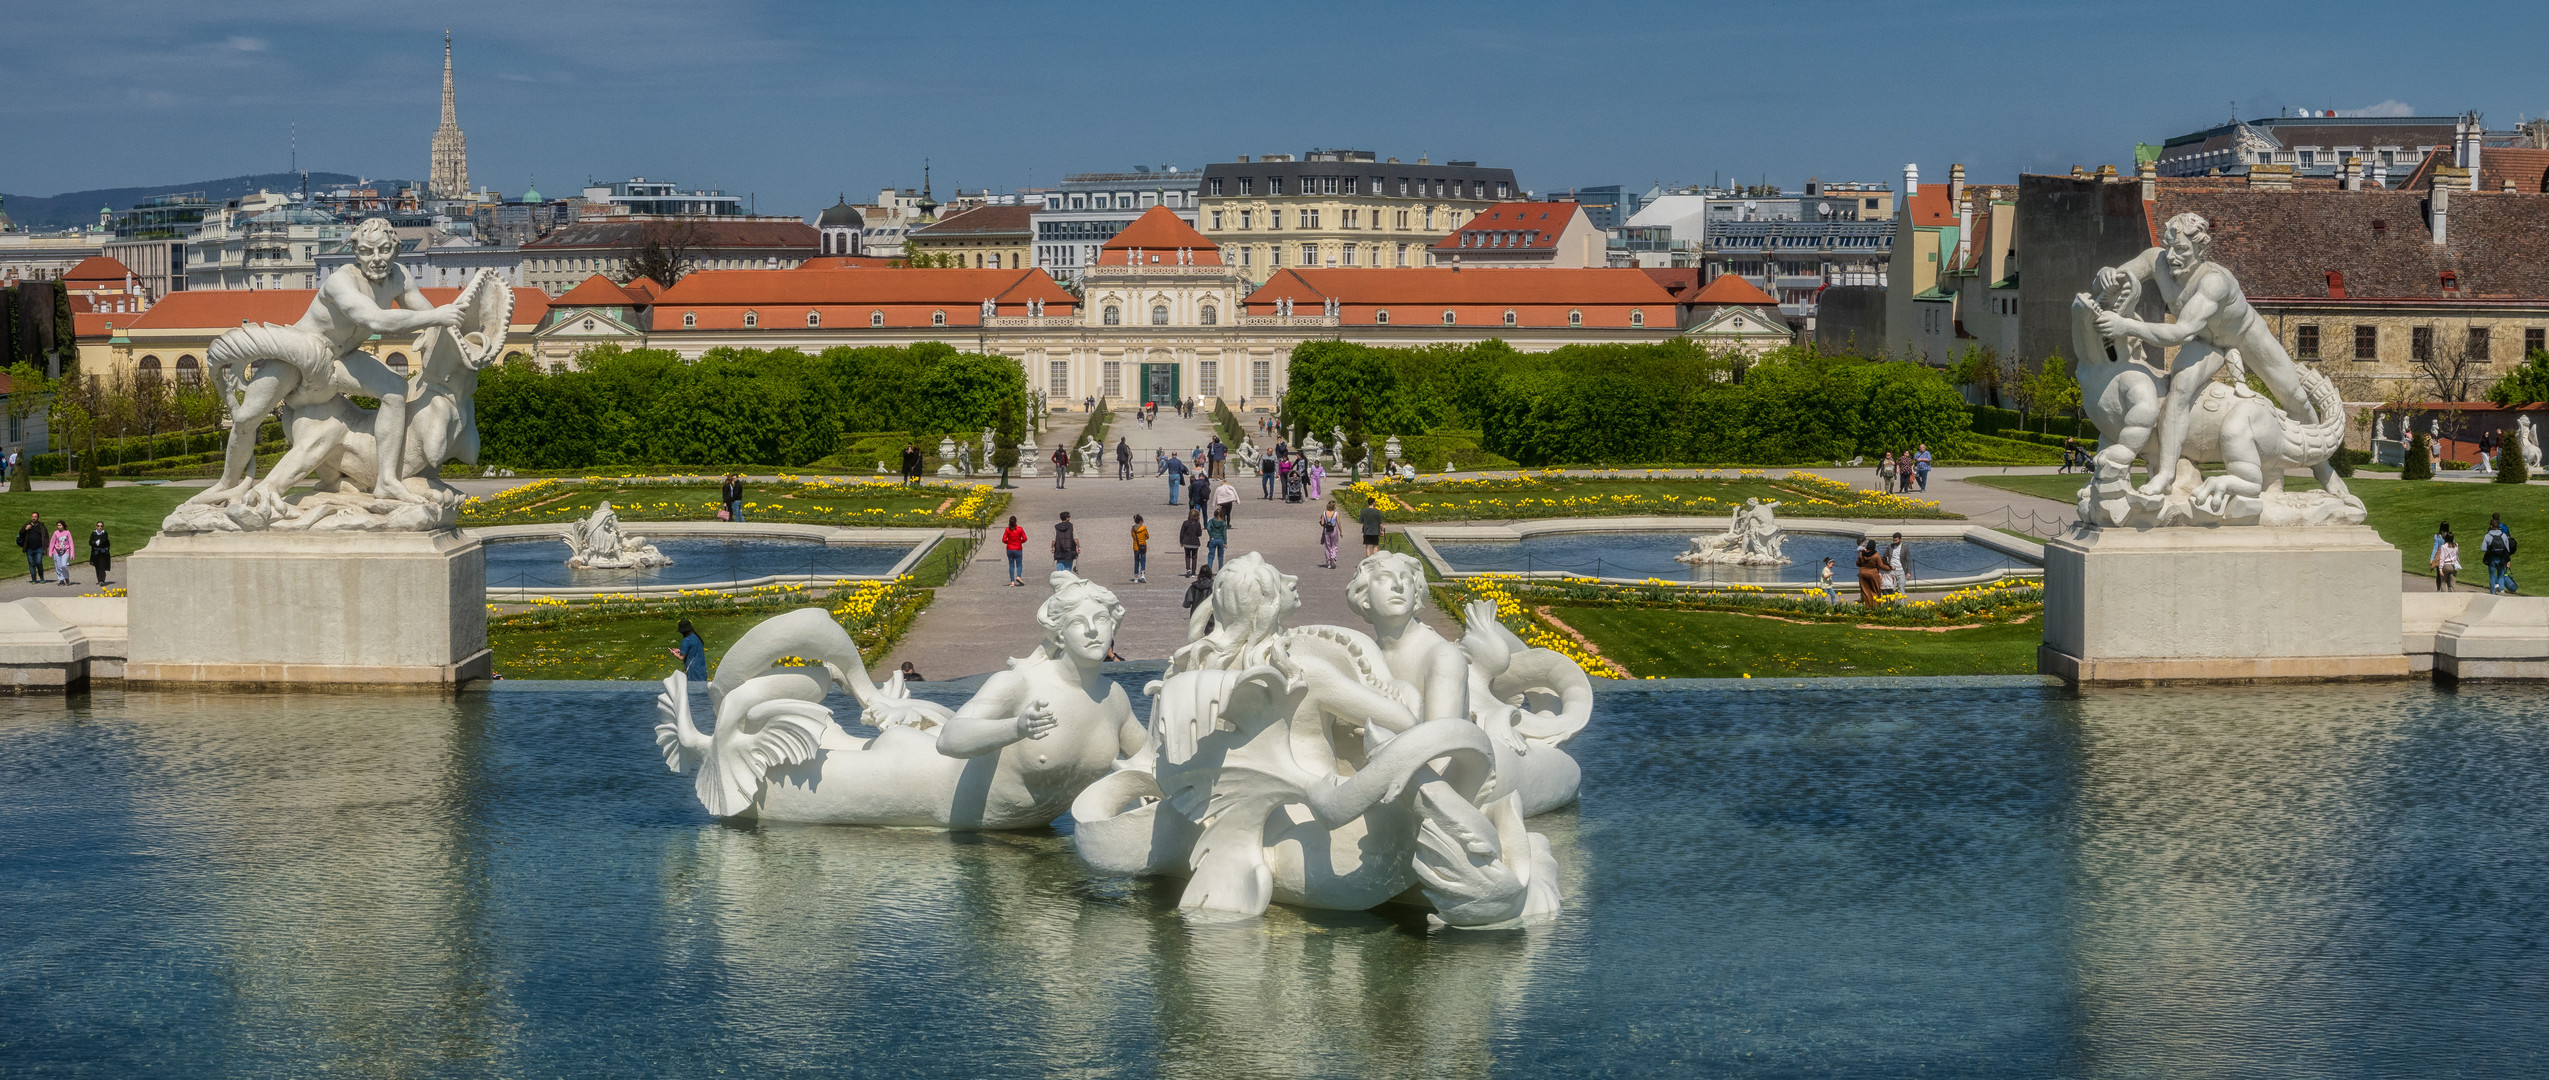 Blick auf das Untere Belvedere in Wien